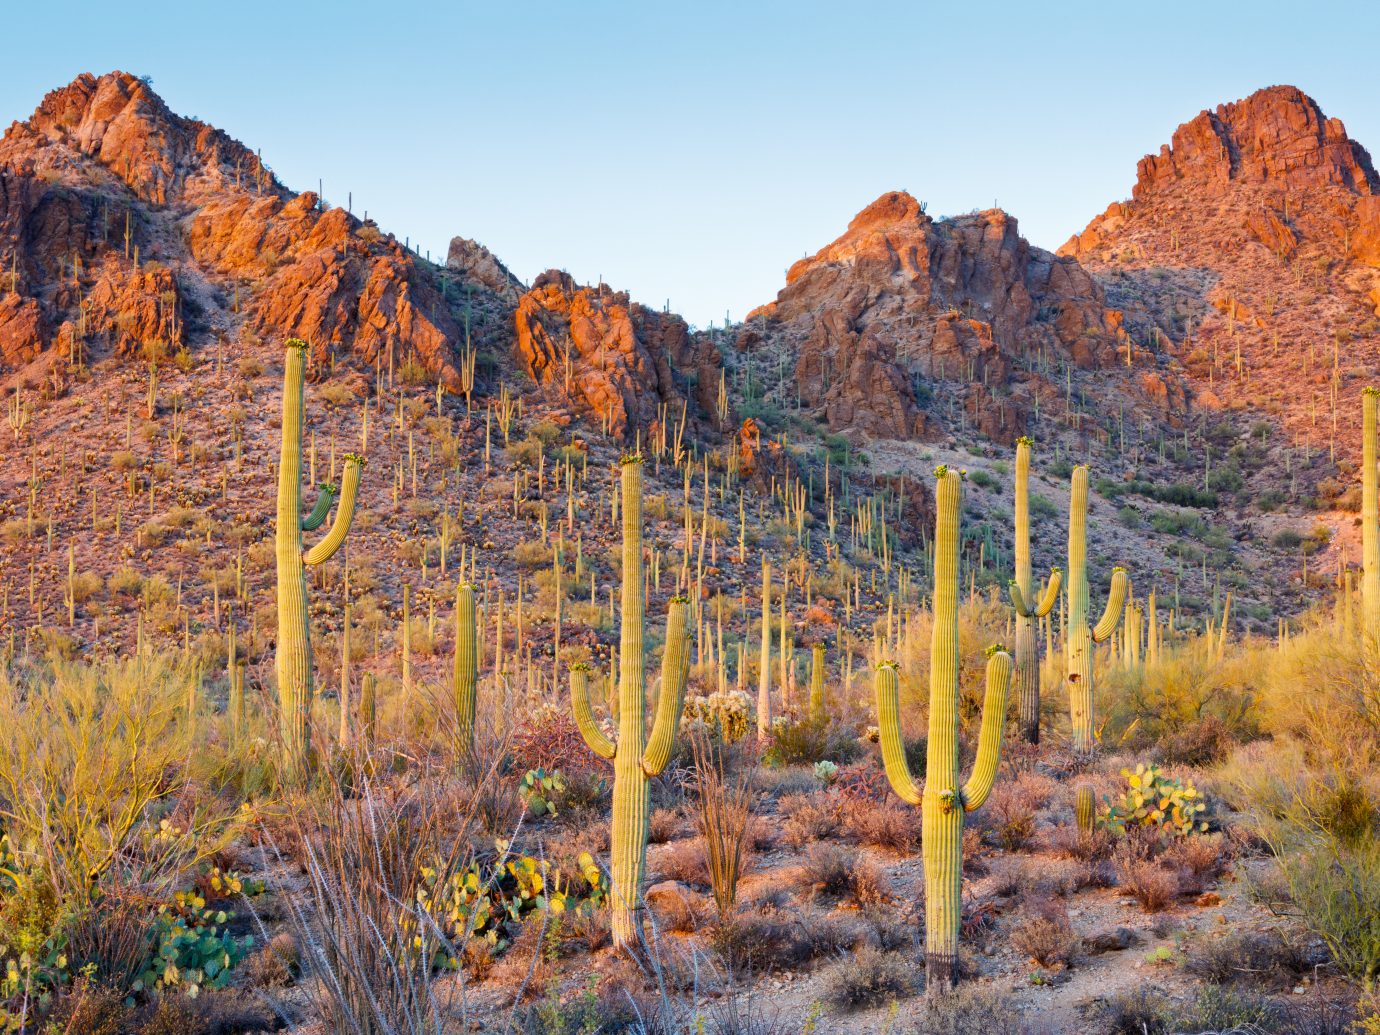 Saguaro Cactus in the Sonoran Desert